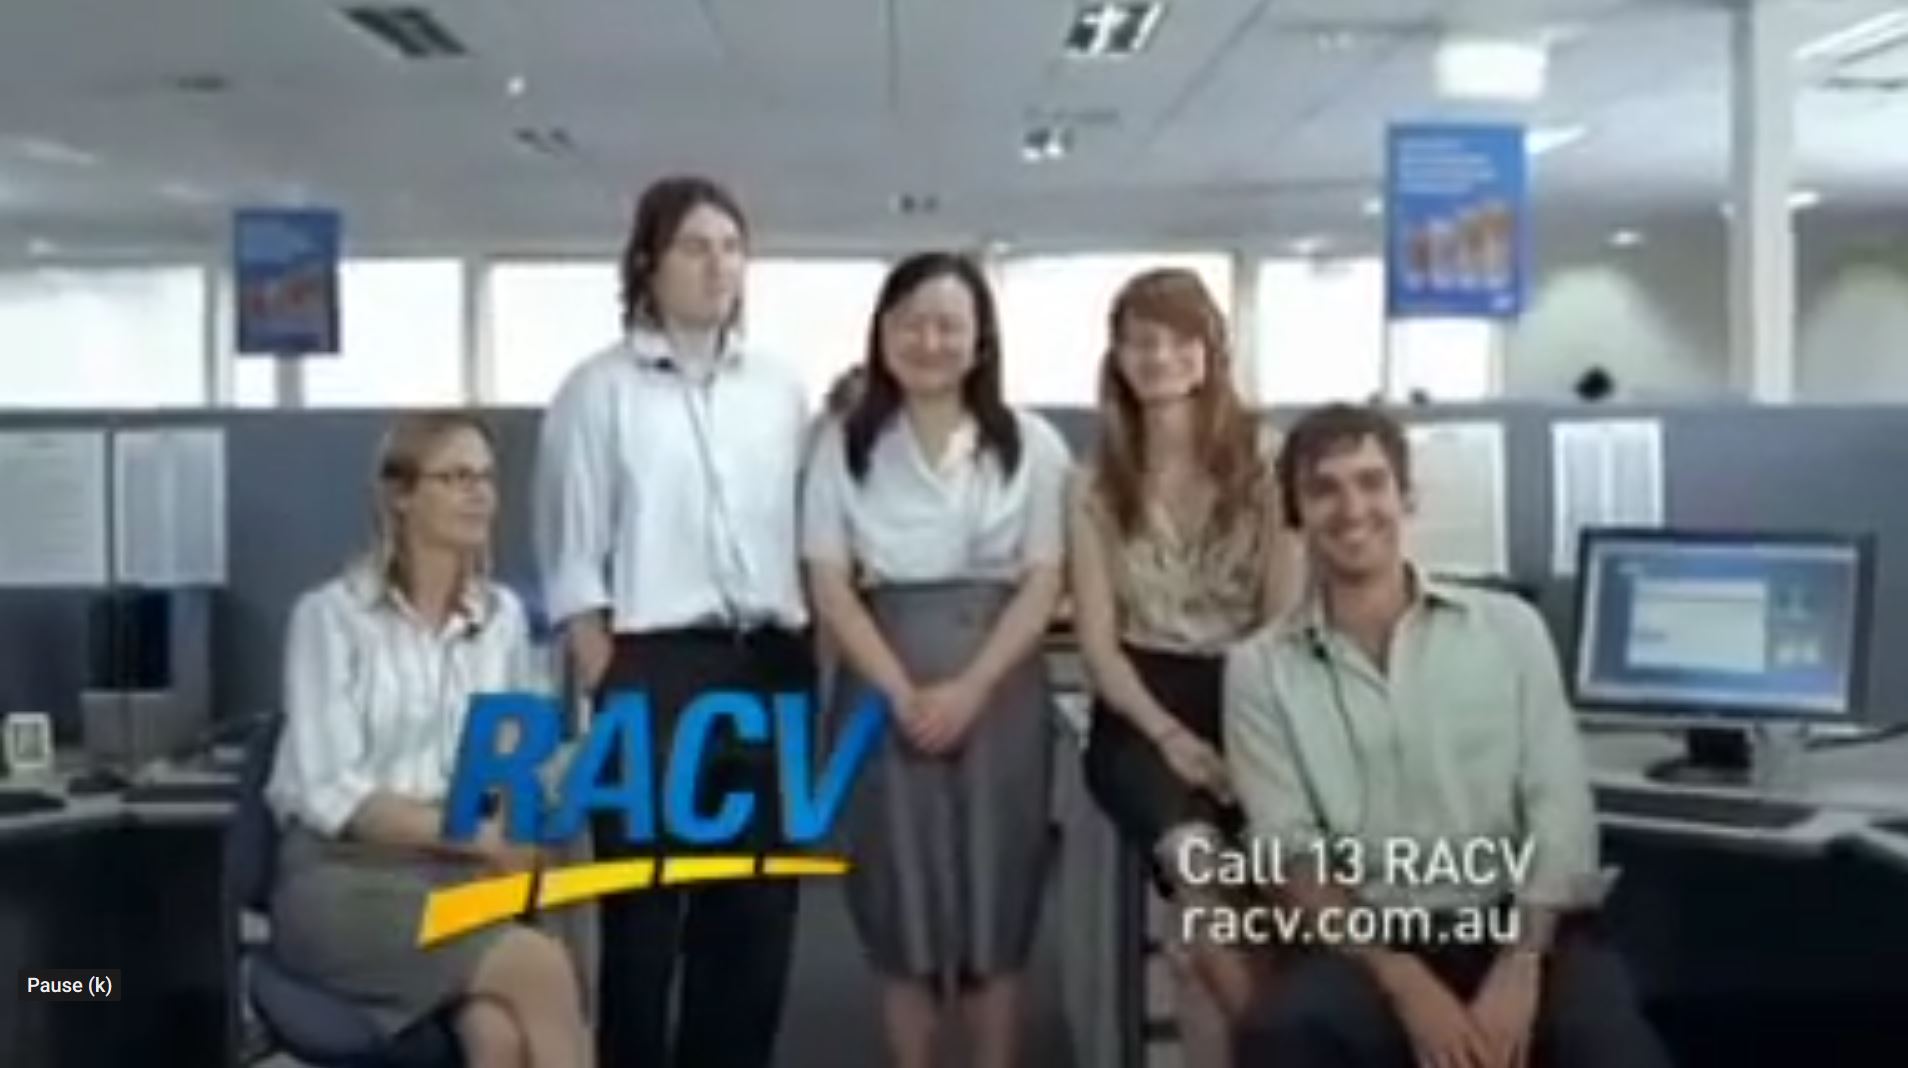 RACV – Call Jason